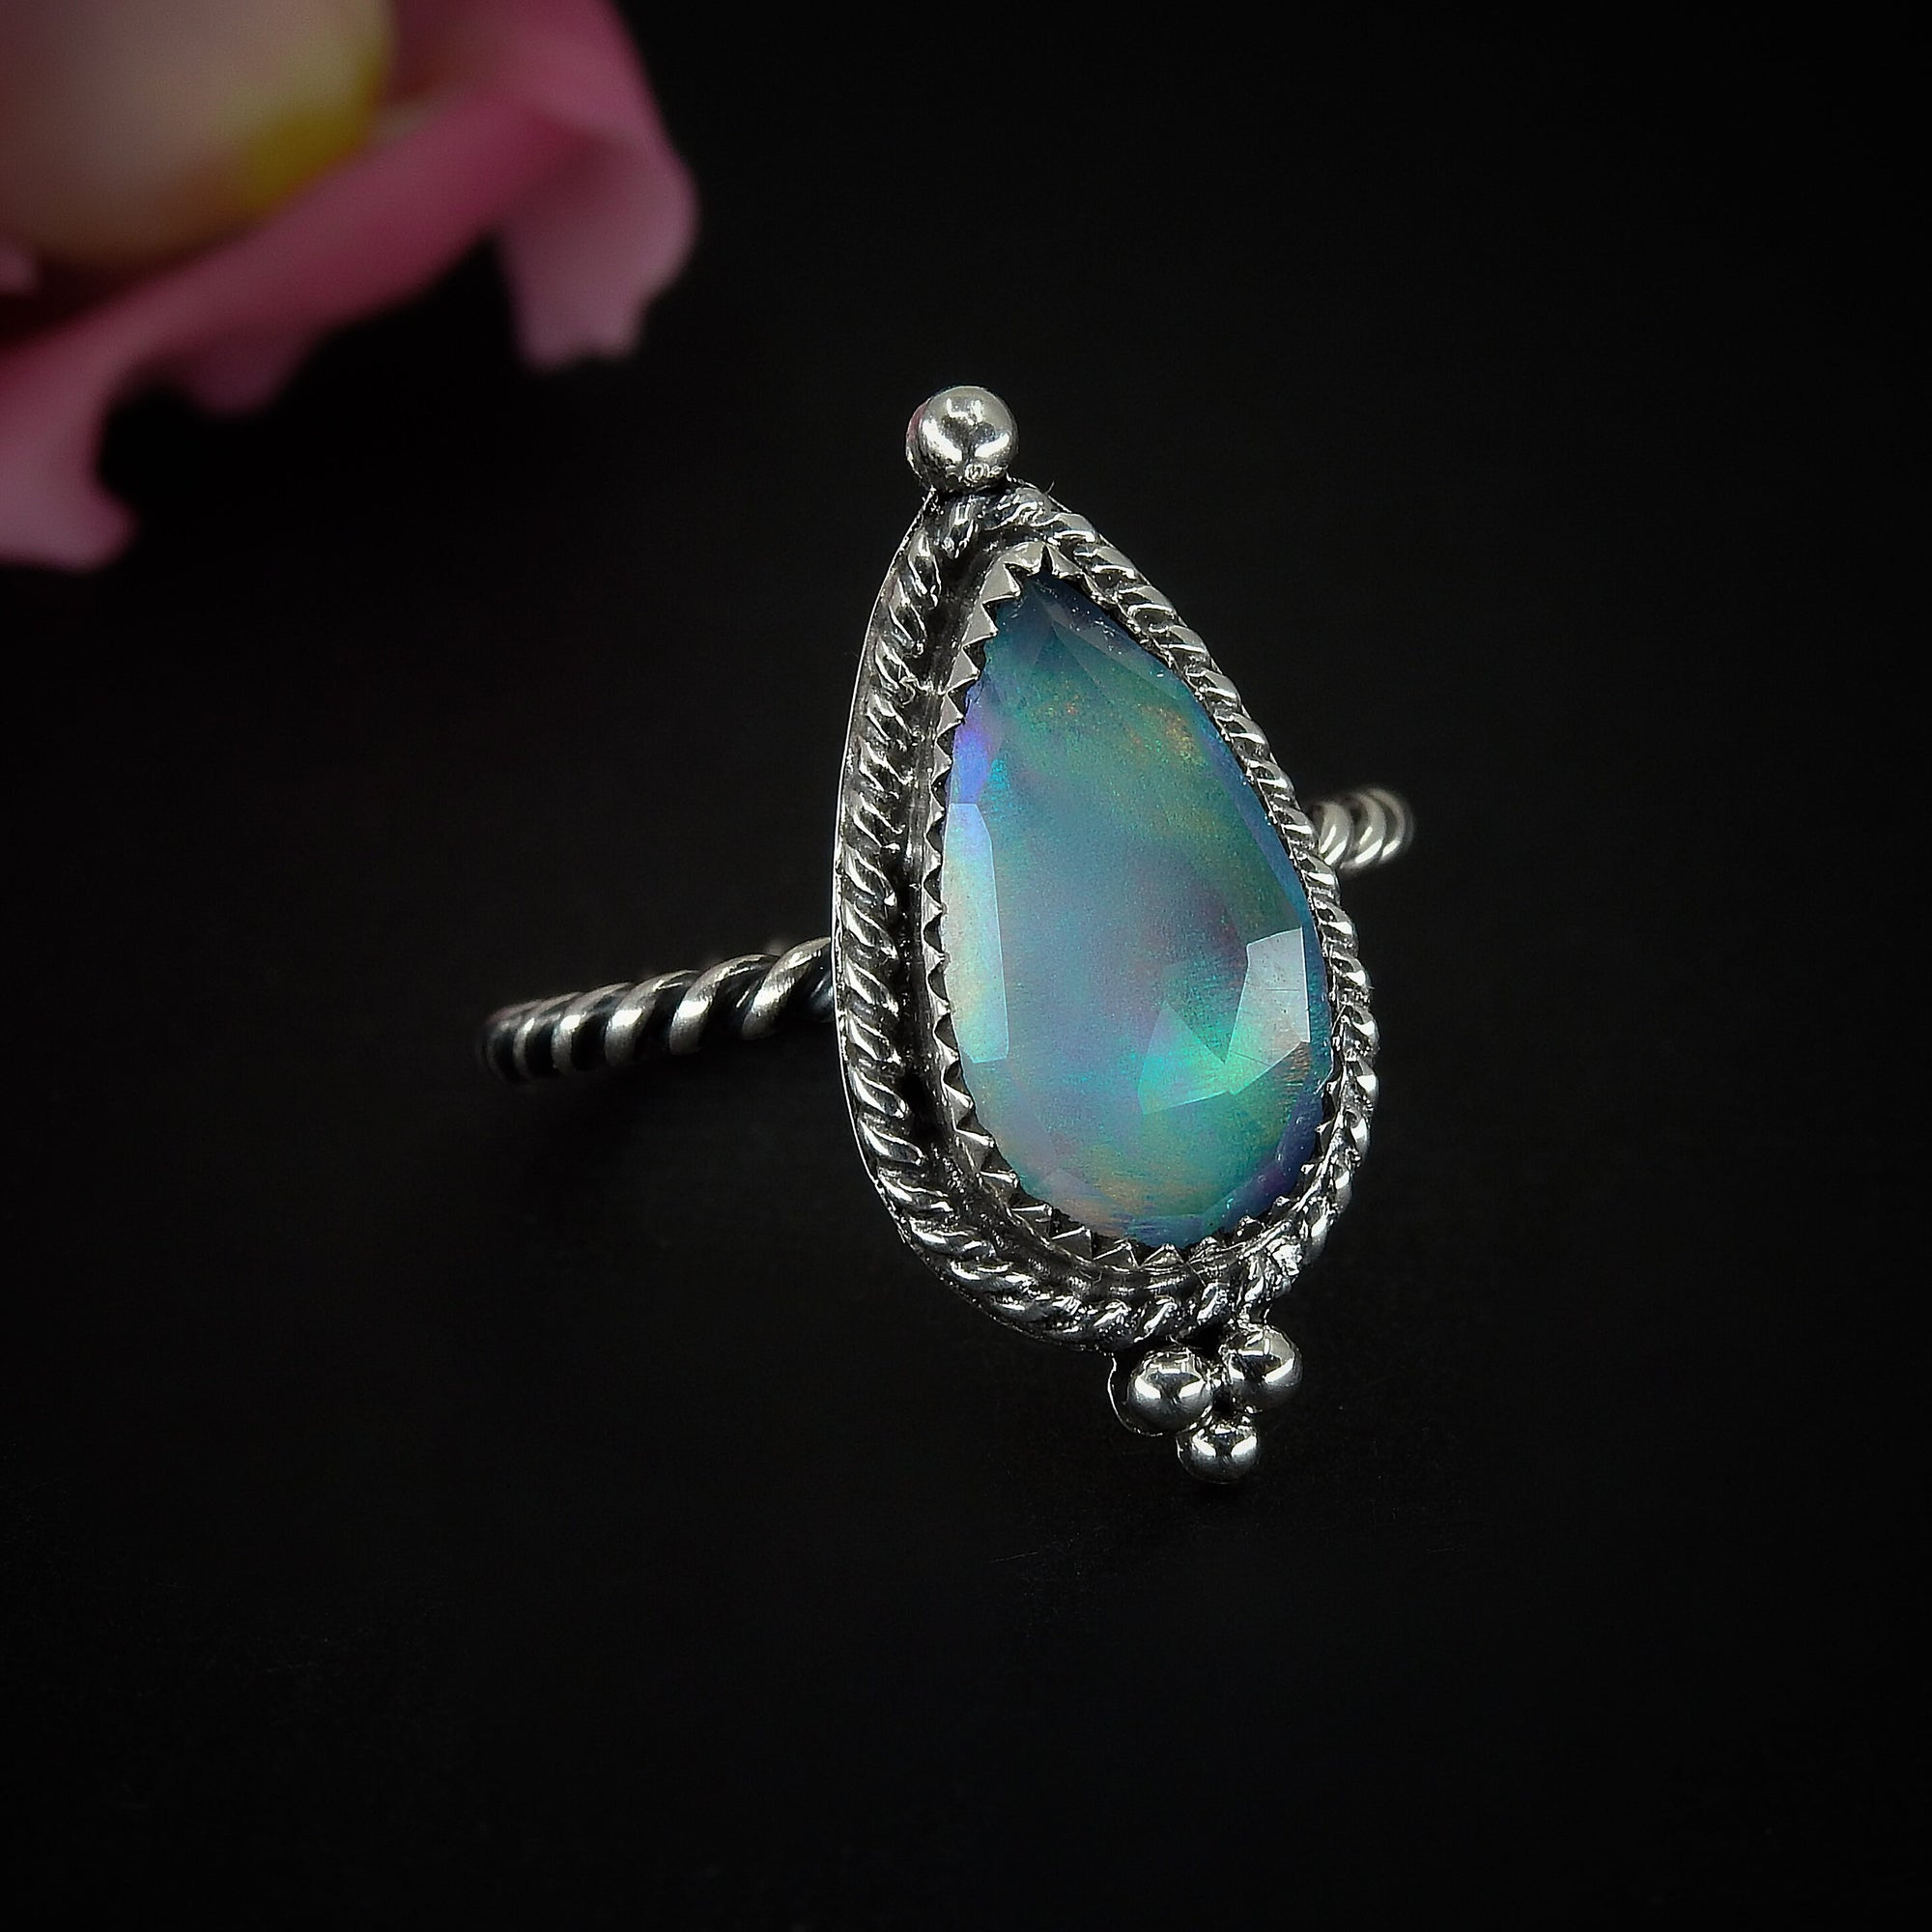 Rose Cut Clear Quartz & Aurora Opal Ring - Size 8 1/4 